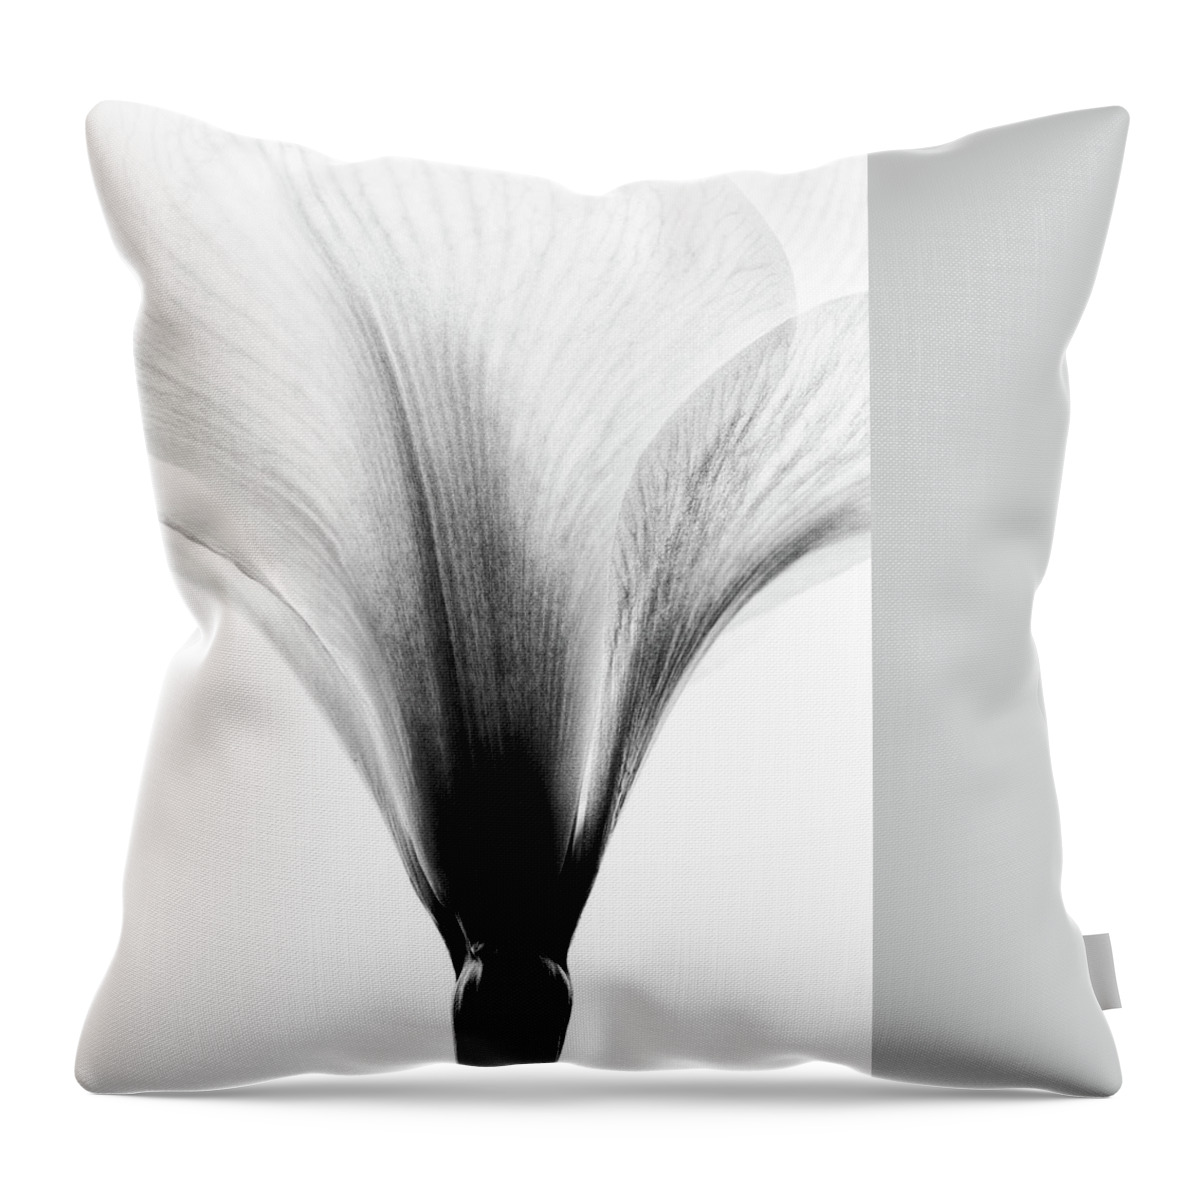 Amaryllis Throw Pillow featuring the photograph Amaryllis #4 by Nailia Schwarz